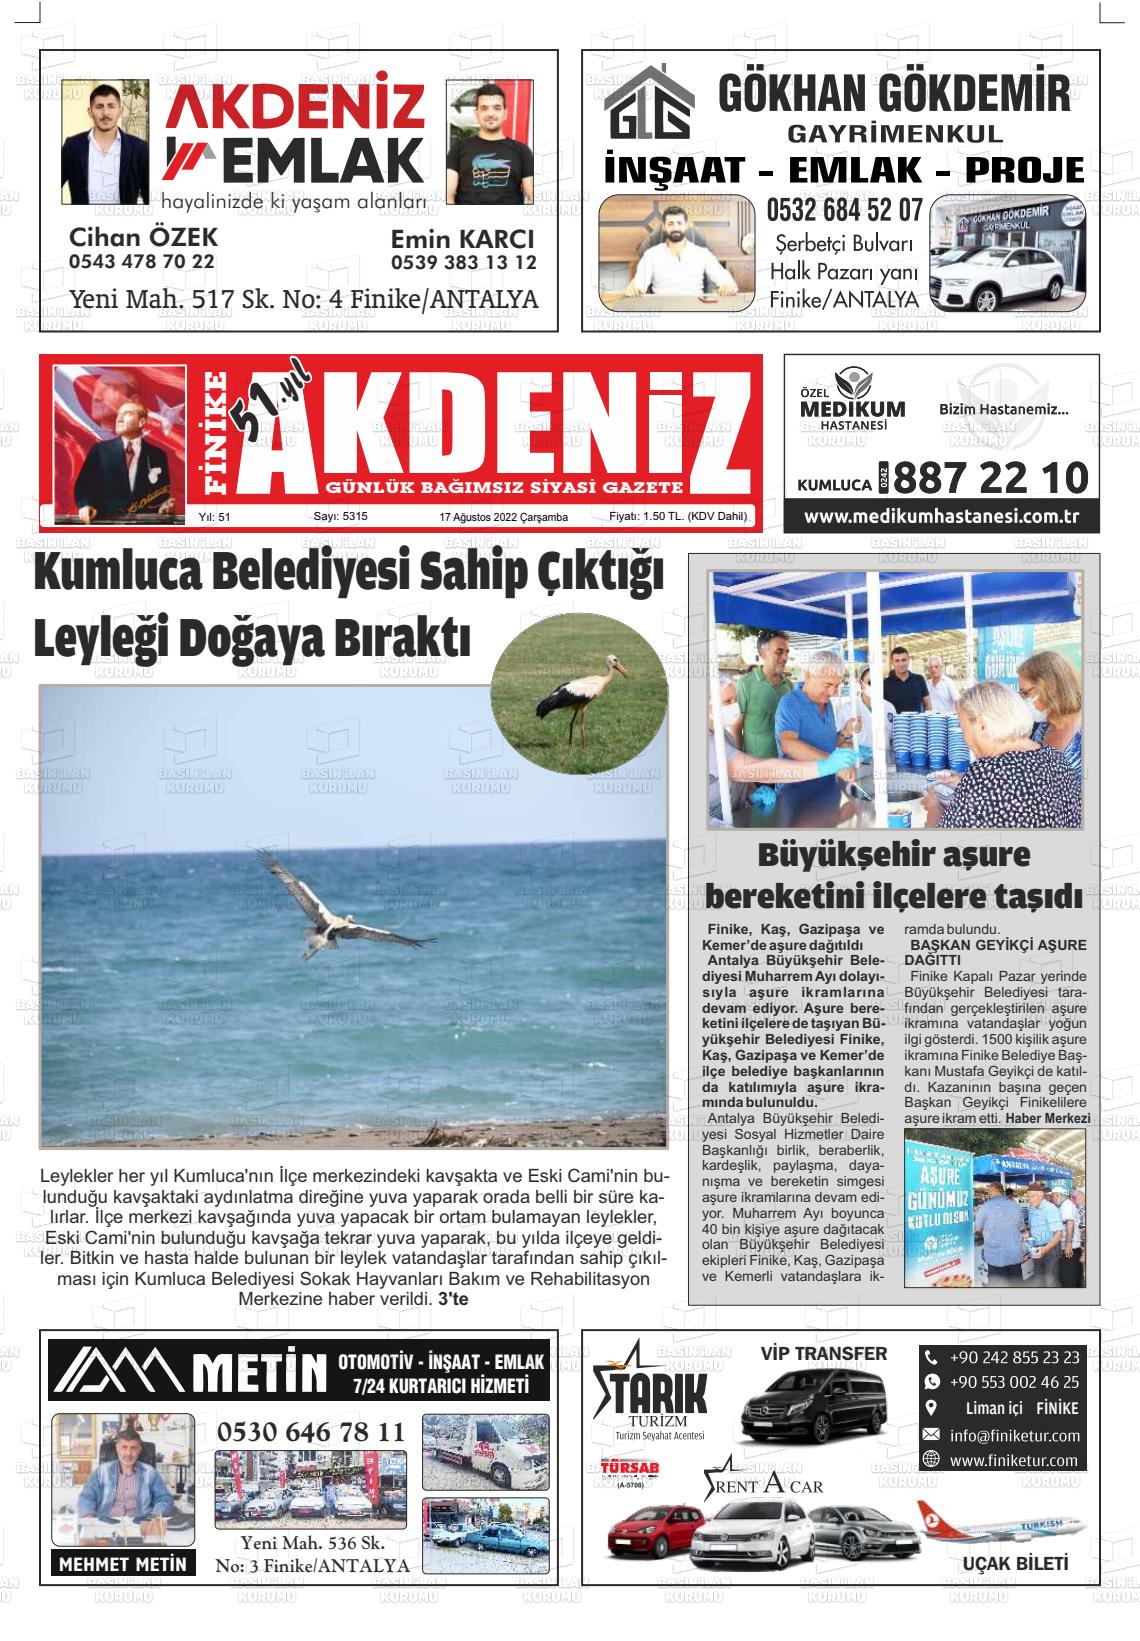 17 Ağustos 2022 Finike Akdeniz Gazete Manşeti